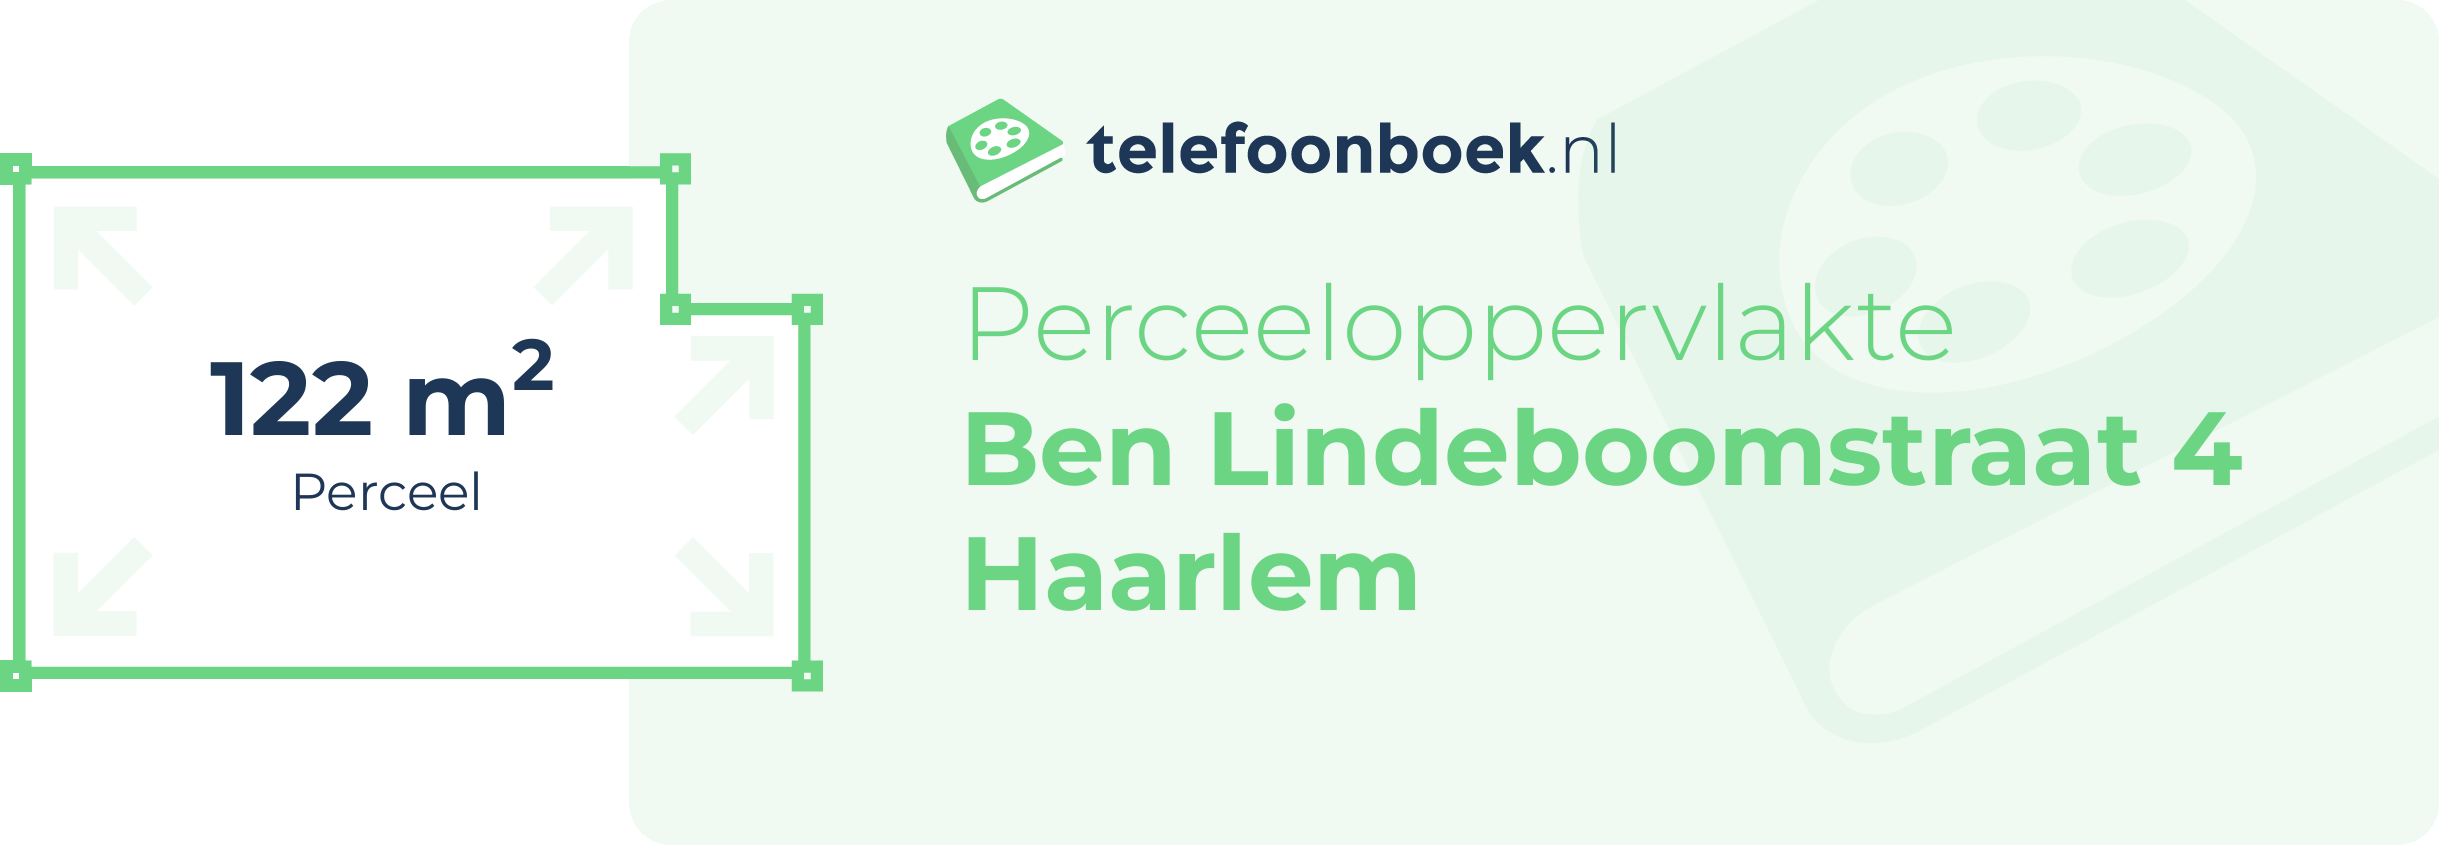 Perceeloppervlakte Ben Lindeboomstraat 4 Haarlem